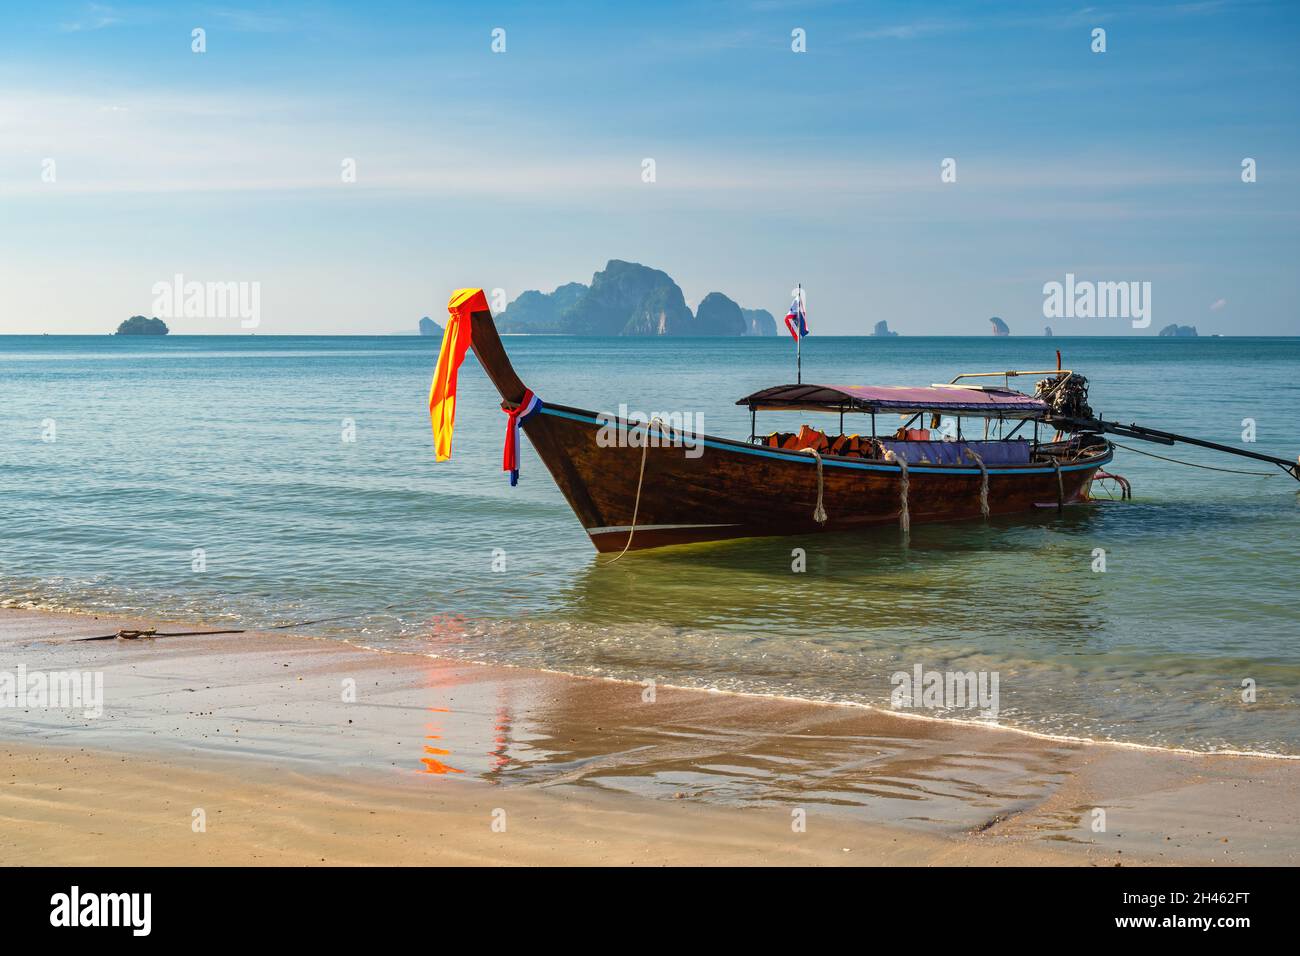 Vue sur les îles tropicales avec bateau à longue queue océan bleu eau de mer et plage de sable blanc, Krabi Thaïlande nature paysage Banque D'Images